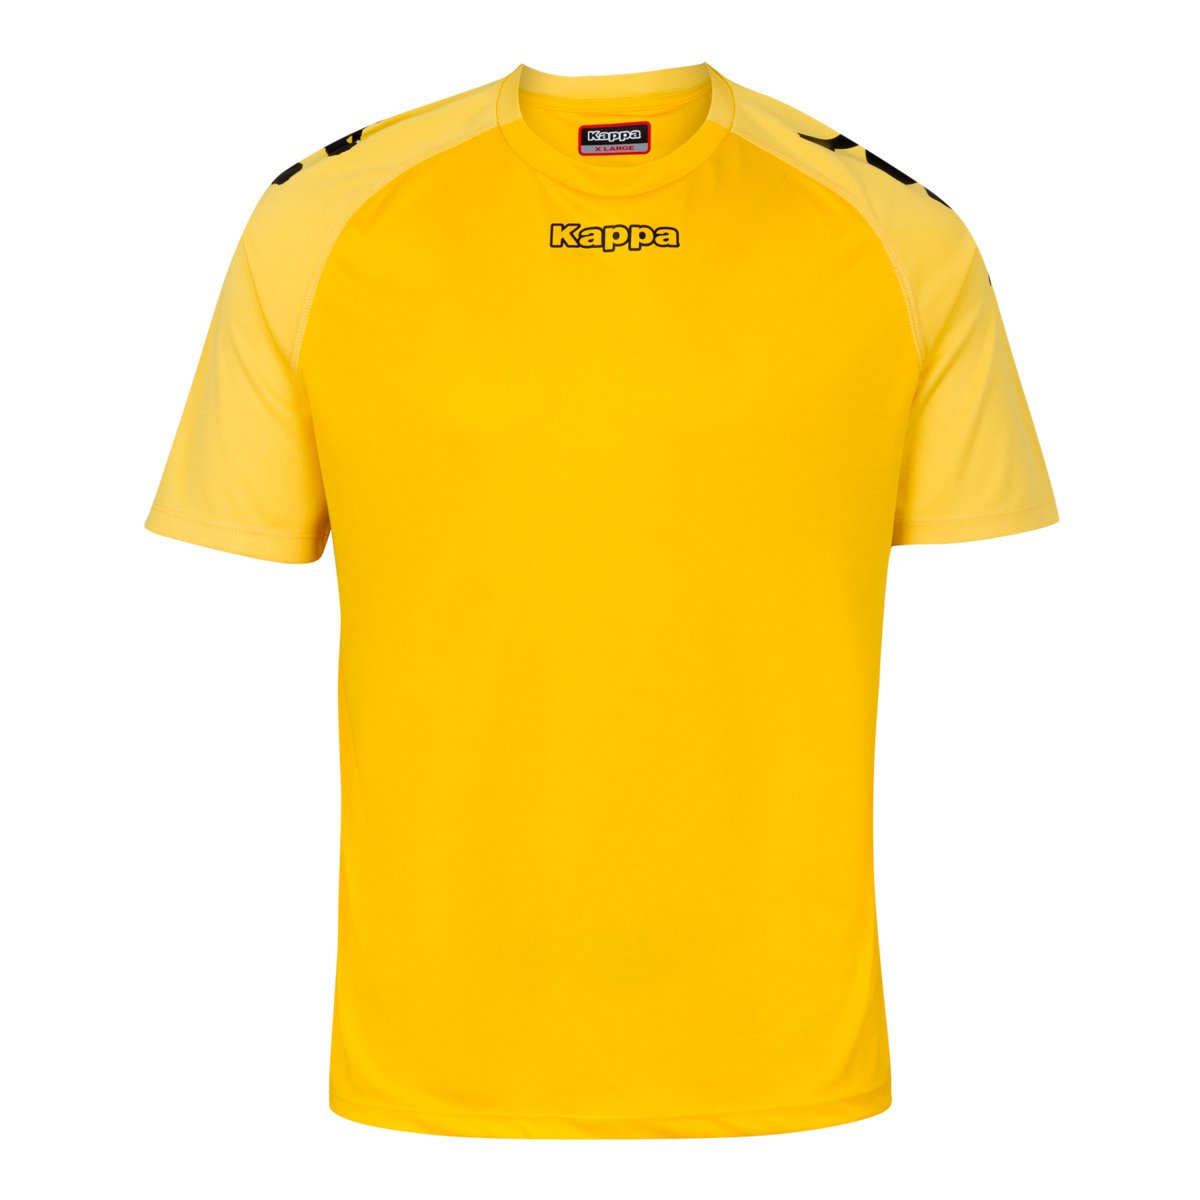 Camiseta de juego Multideporte Paderno Amarillo Hombre - Imagen 1